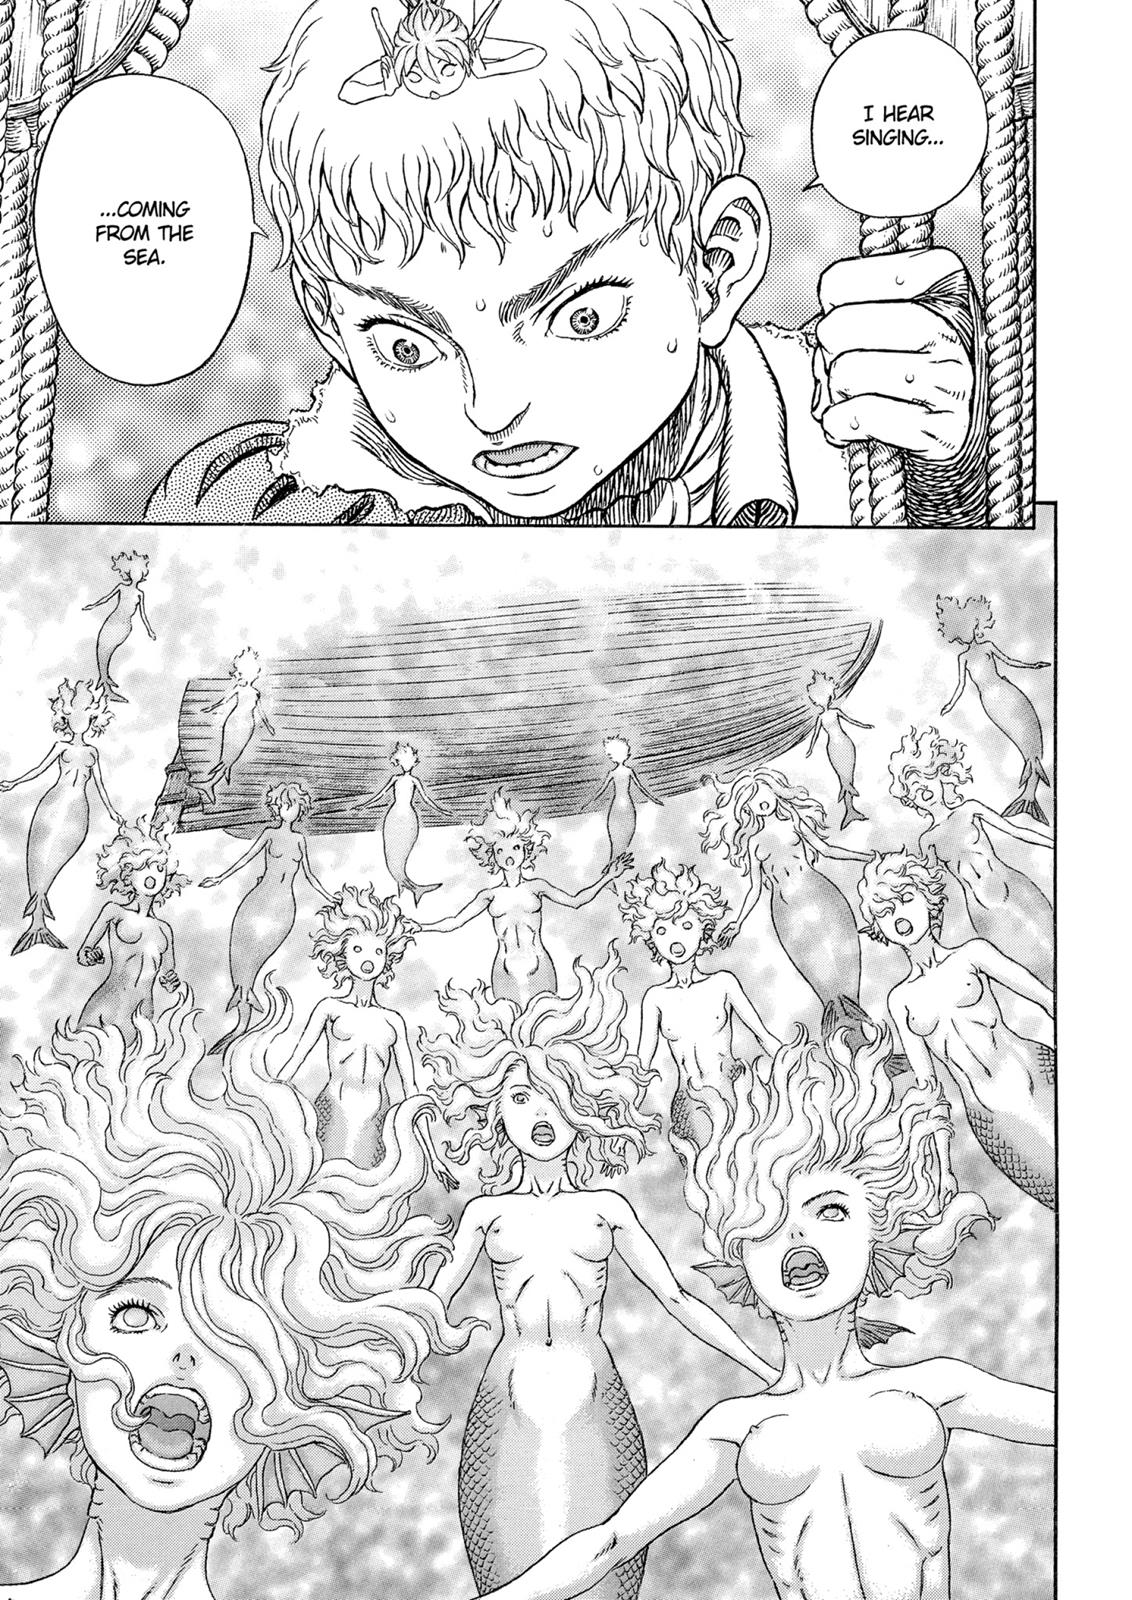 Berserk Manga Chapter 326 image 04